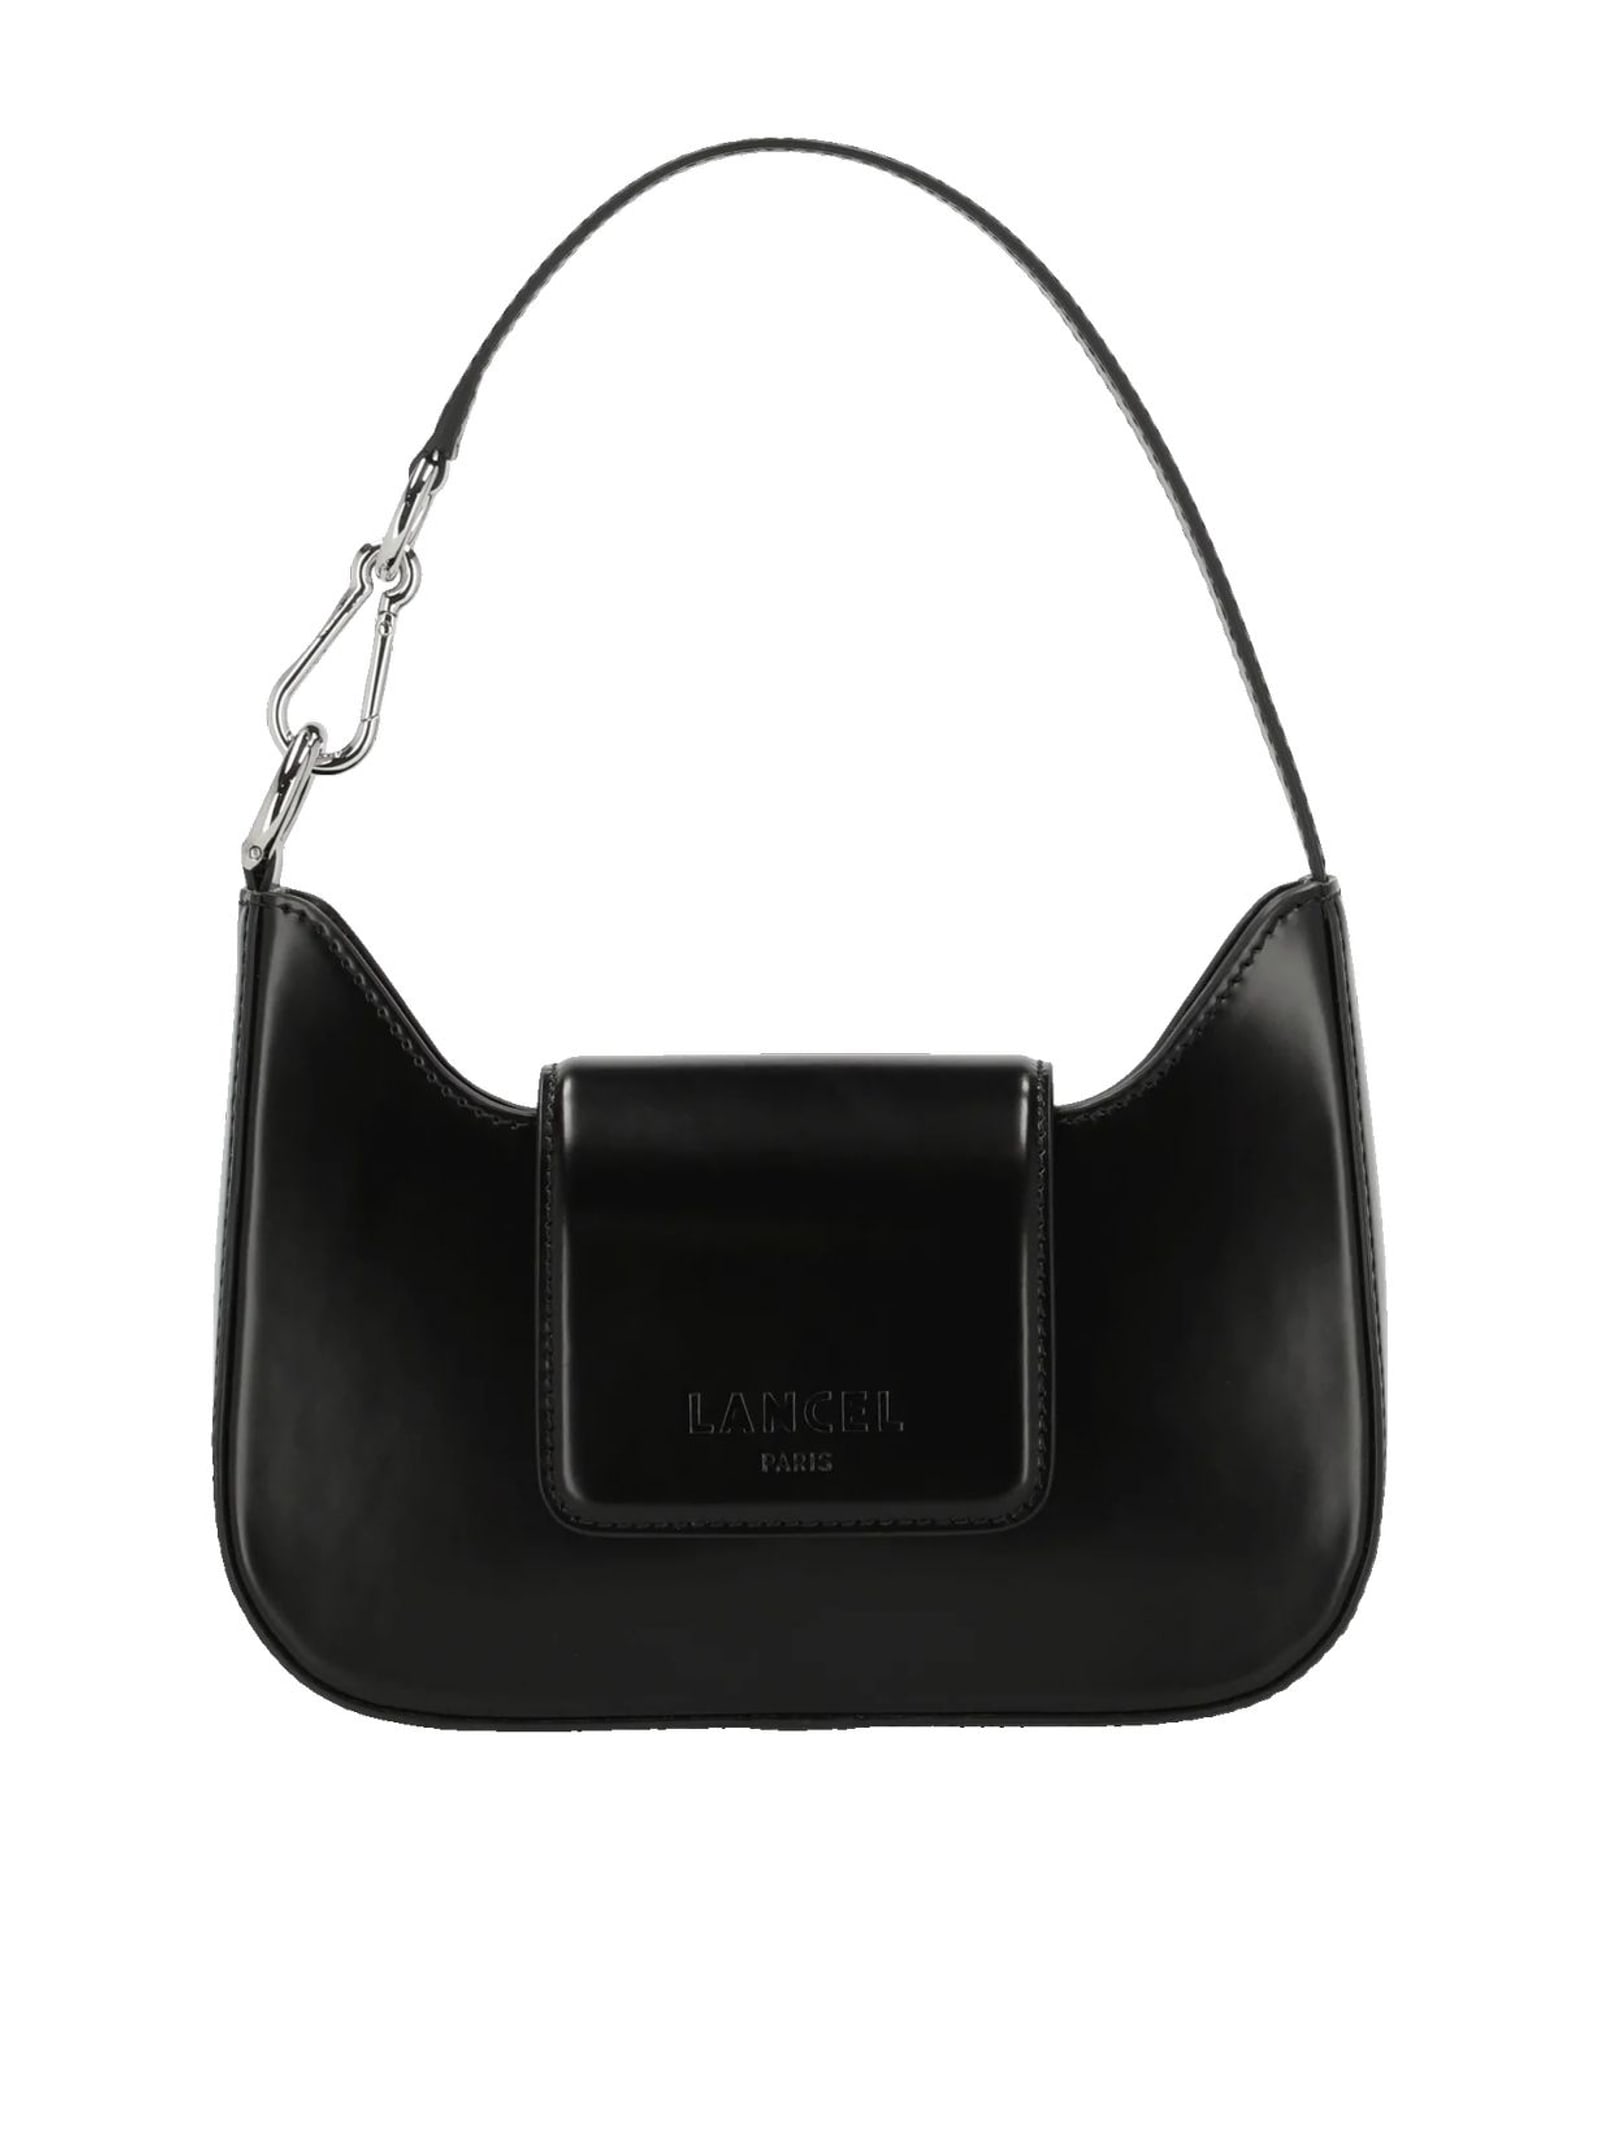 Lancel Black Leather Baguette Bag